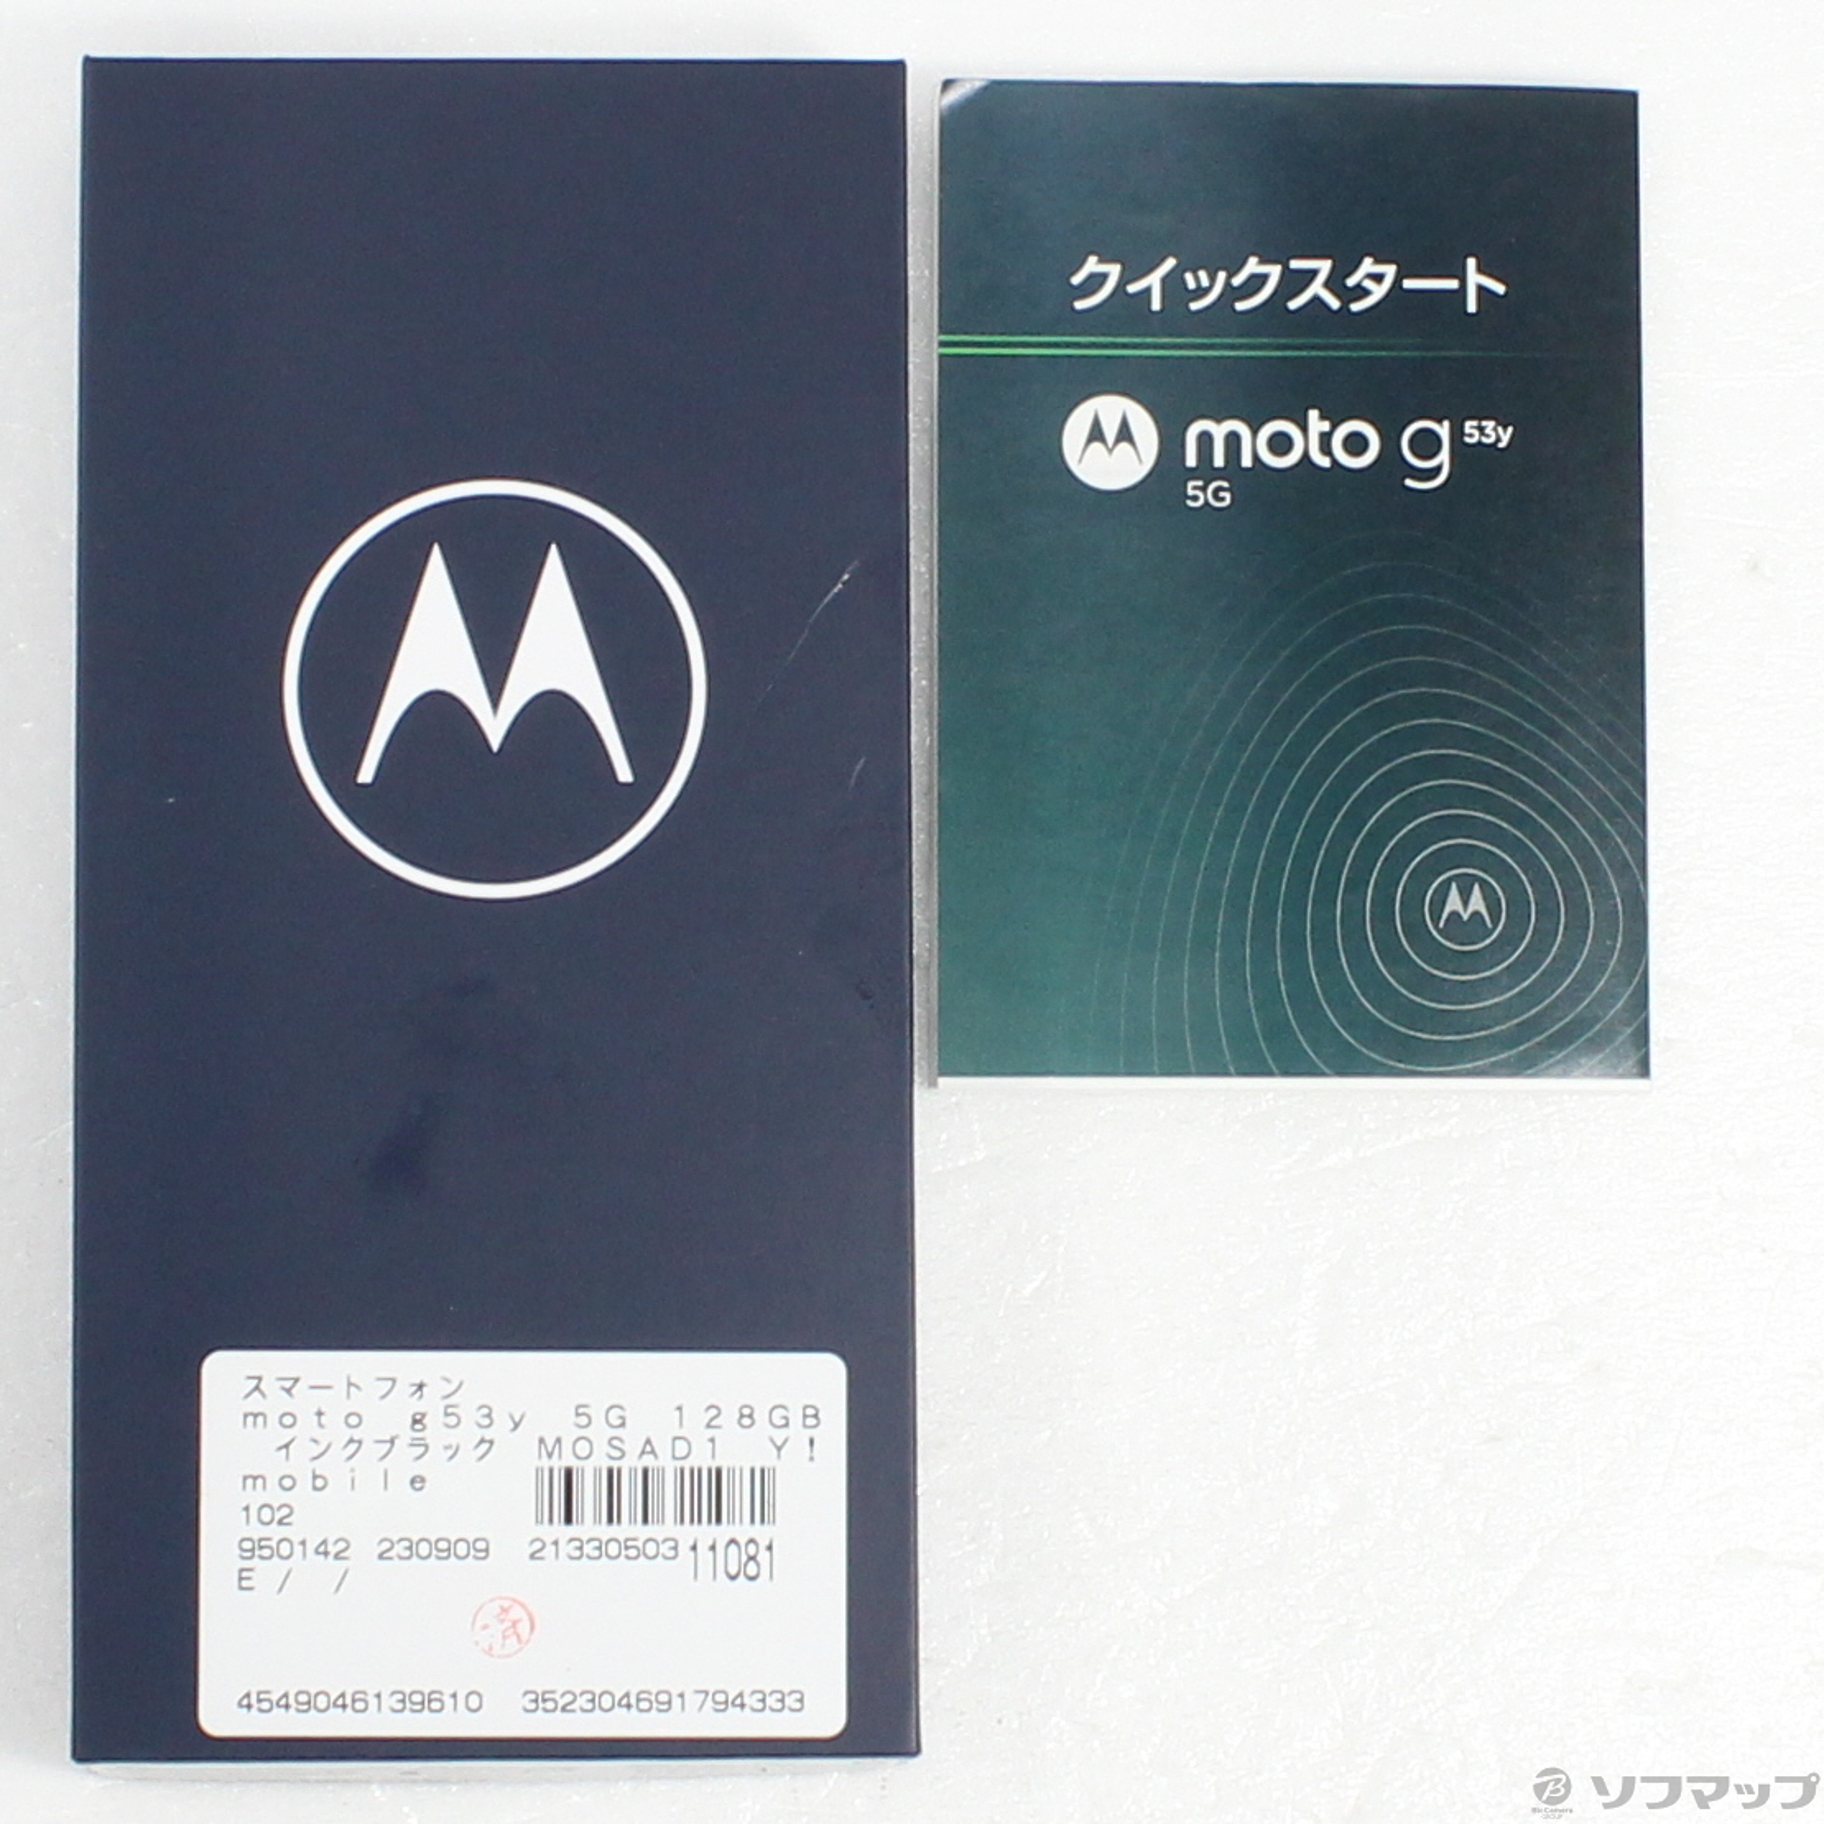 中古】moto g53y 5G 128GB インクブラック MOSAD1 Y!mobile